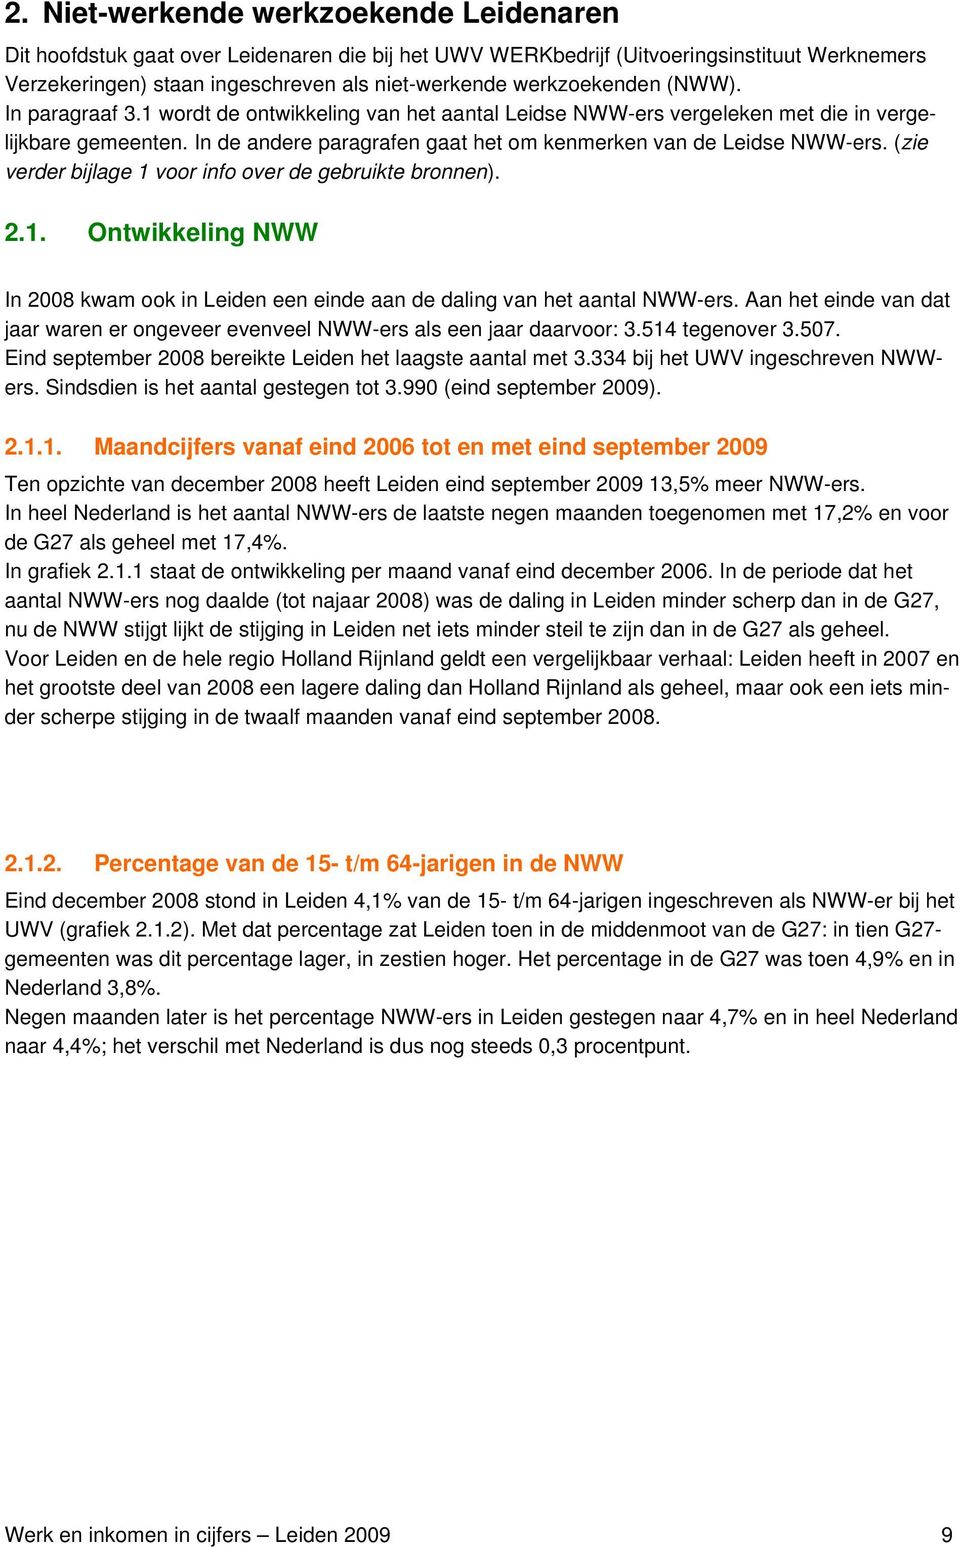 In de andere paragrafen gaat het om kenmerken van de Leidse NWW-ers. (zie verder bijlage 1 voor info over de gebruikte bronnen). 2.1. Ontwikkeling NWW In 2008 kwam ook in Leiden een einde aan de daling van het aantal NWW-ers.